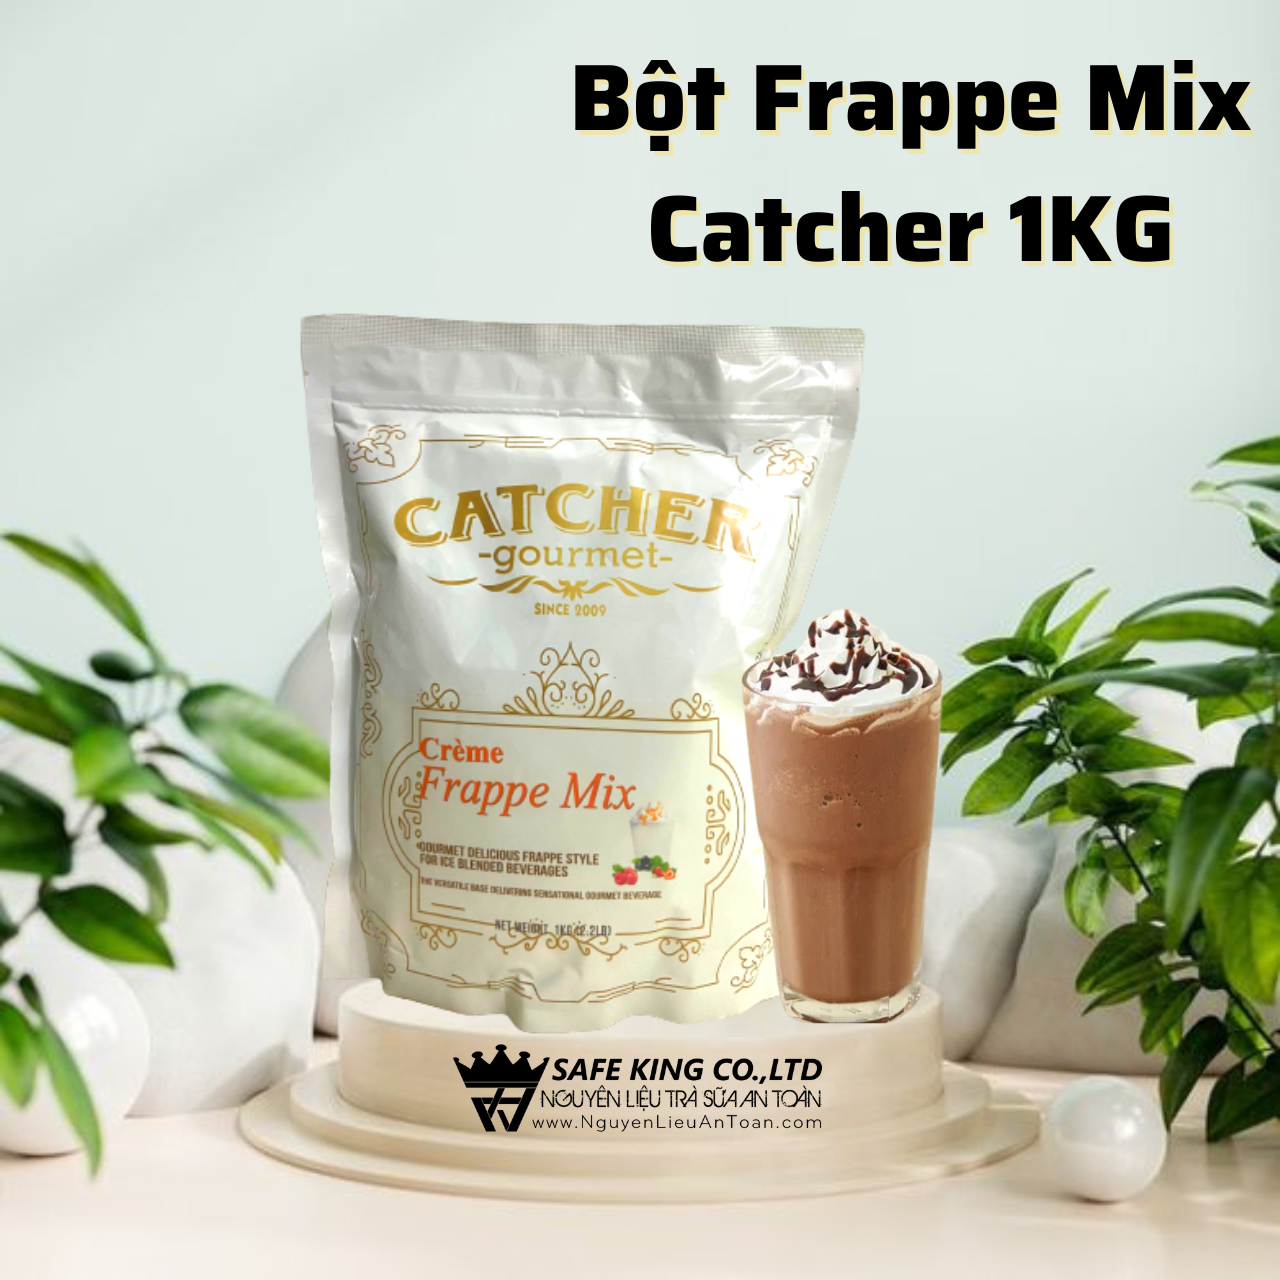 Bột Frappe Mix Catcher 1KG, Bột Crème Frappe Mix Malaysia Làm Sinh Tố